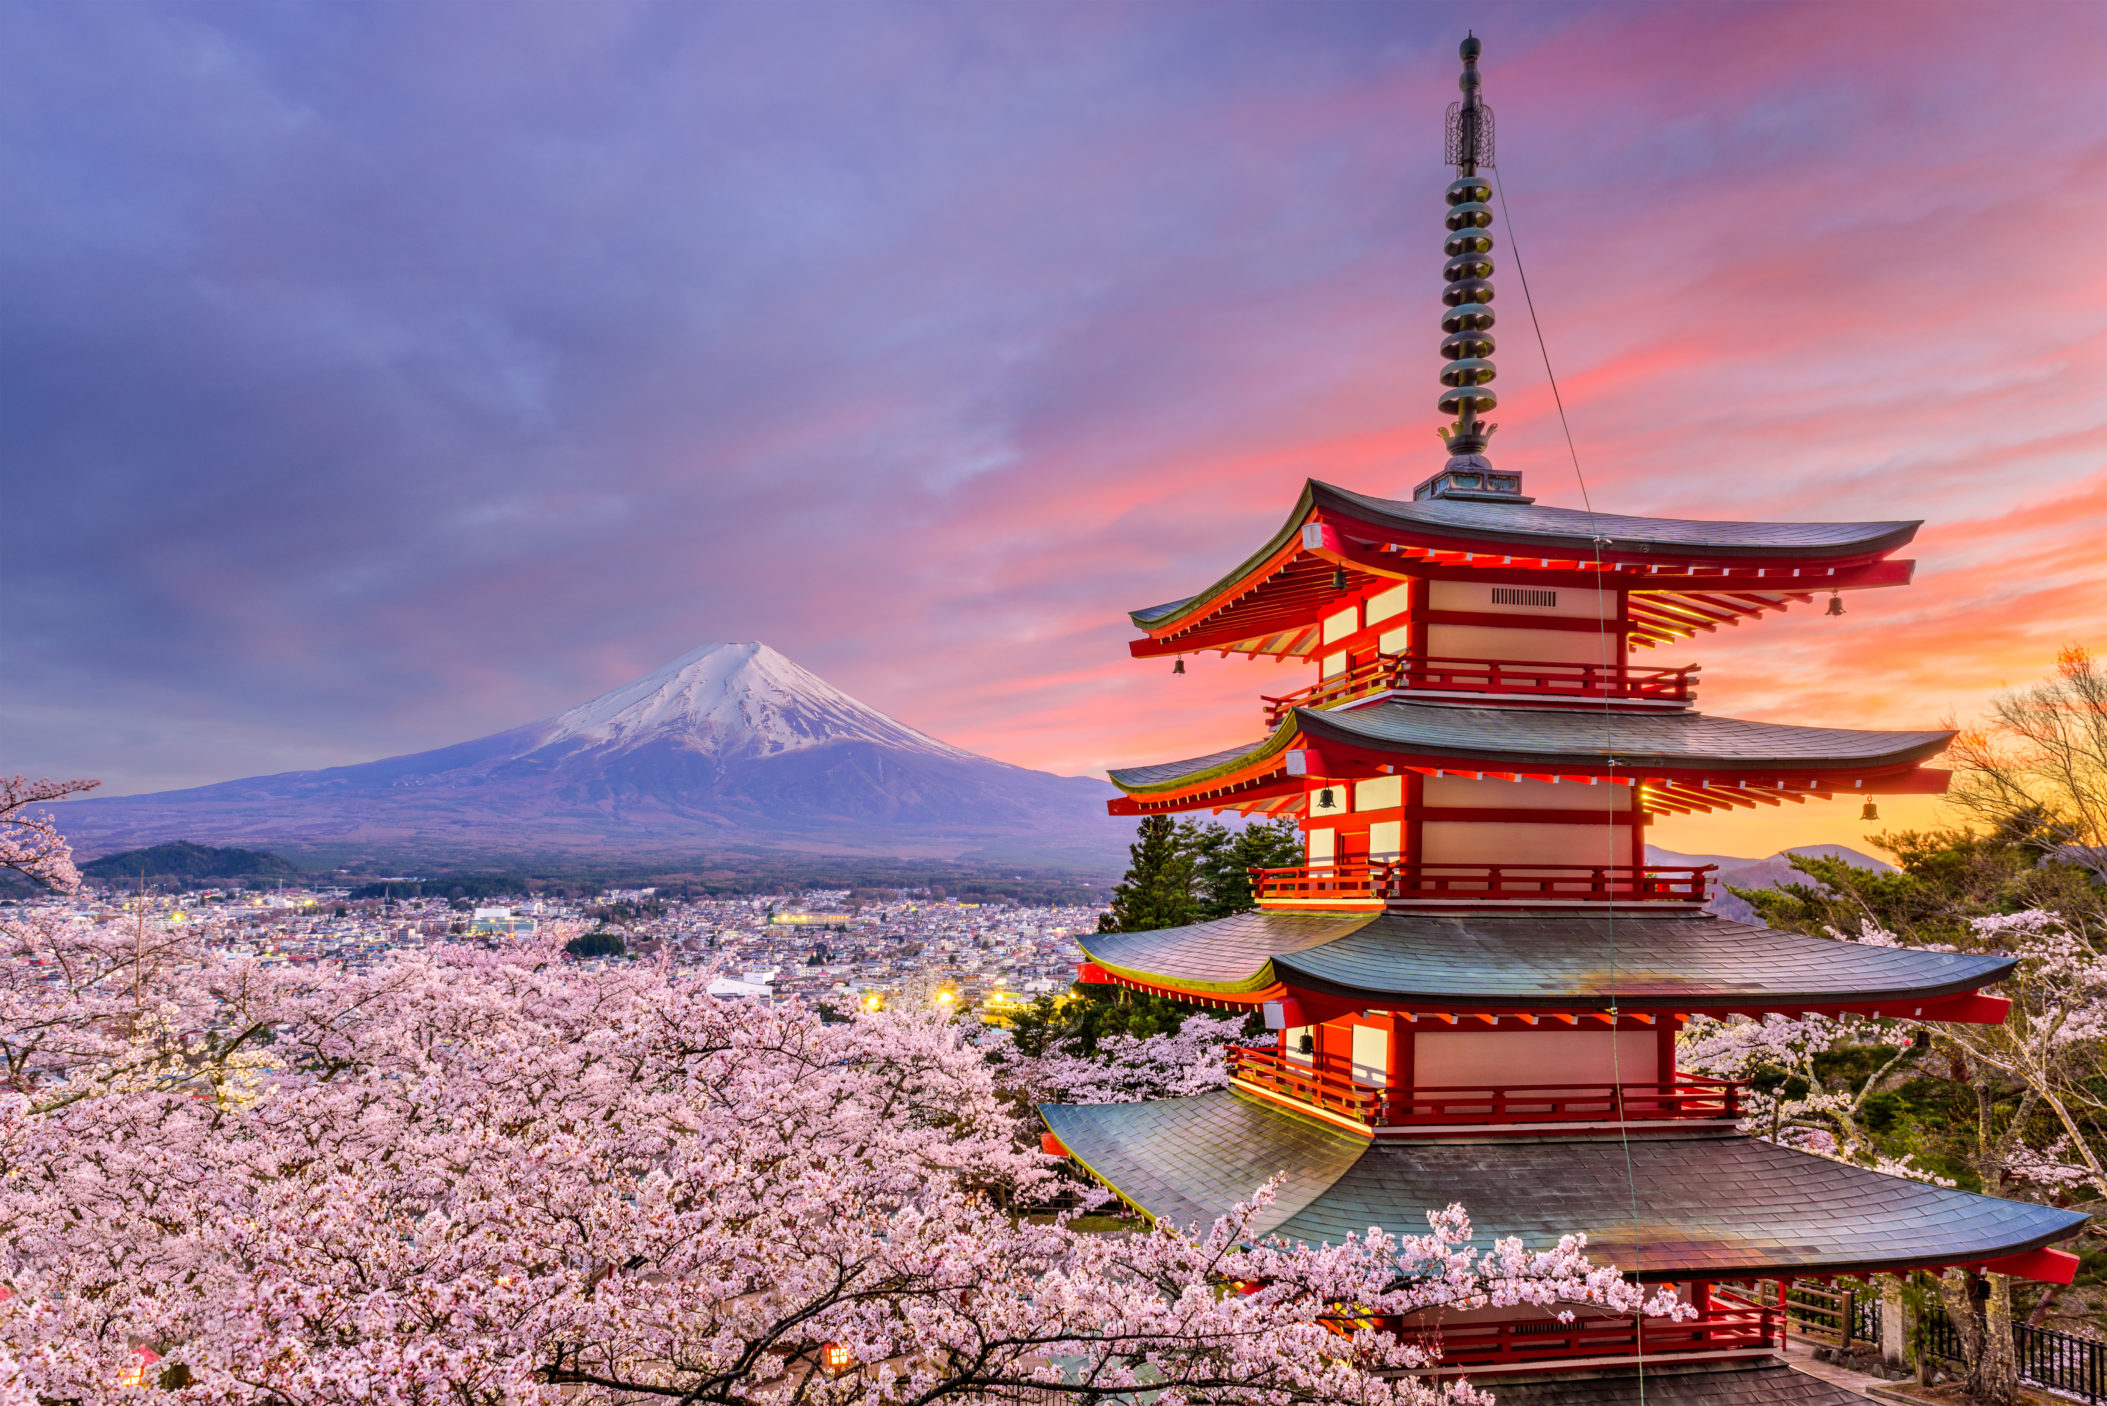 Japan [Shutterstock]